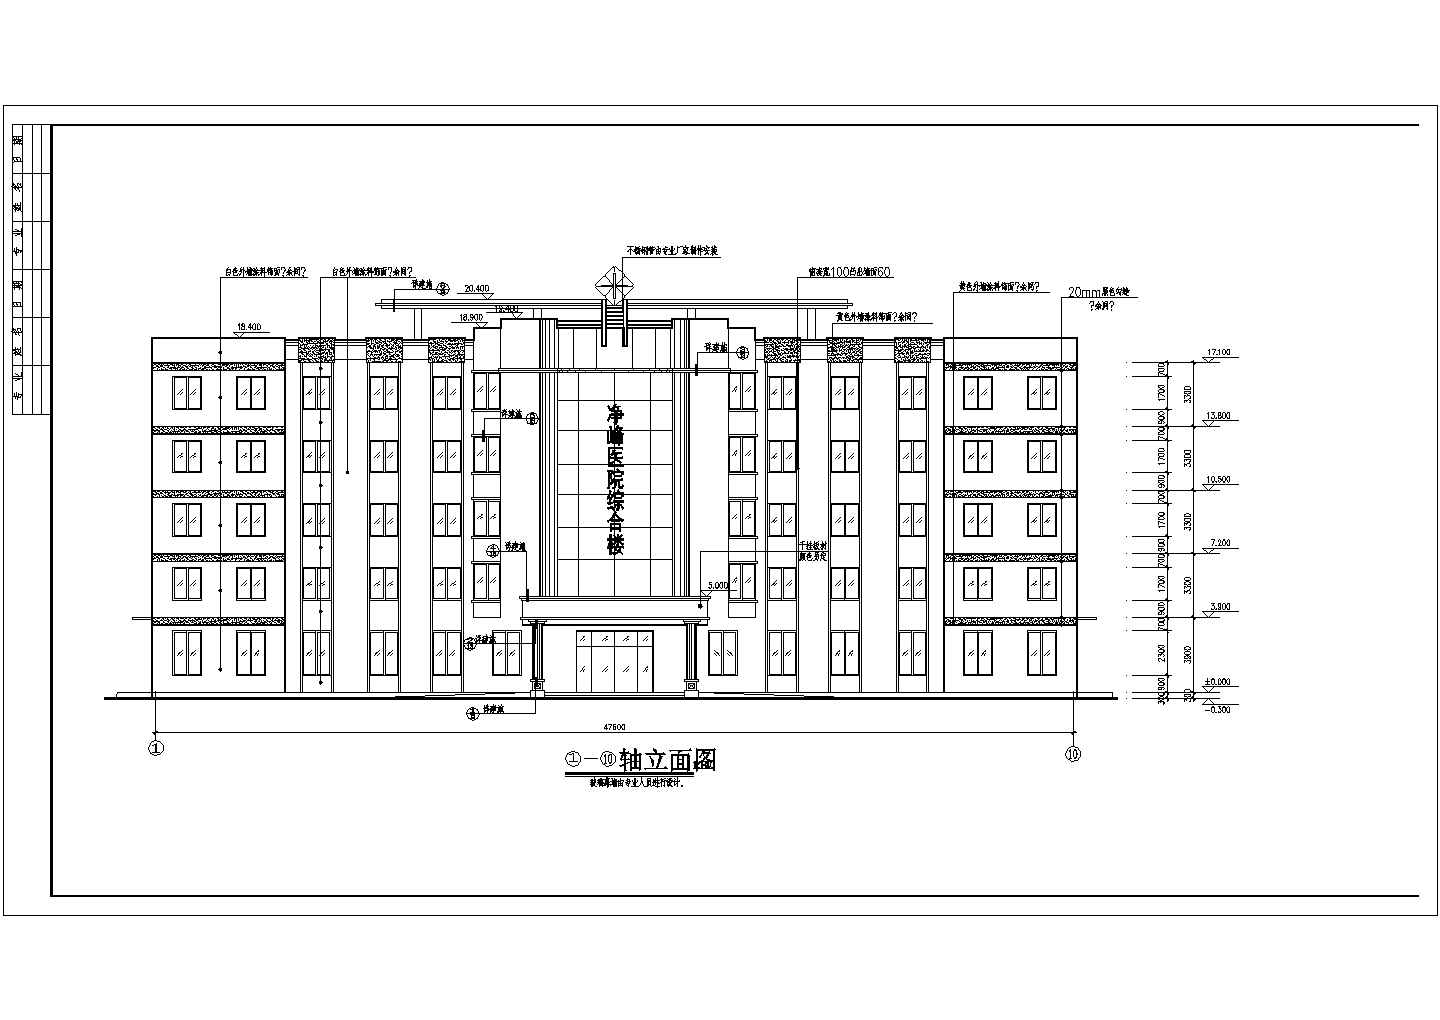 惠安净峰镇5层混凝土框架结构医院综合楼建筑施工图纸